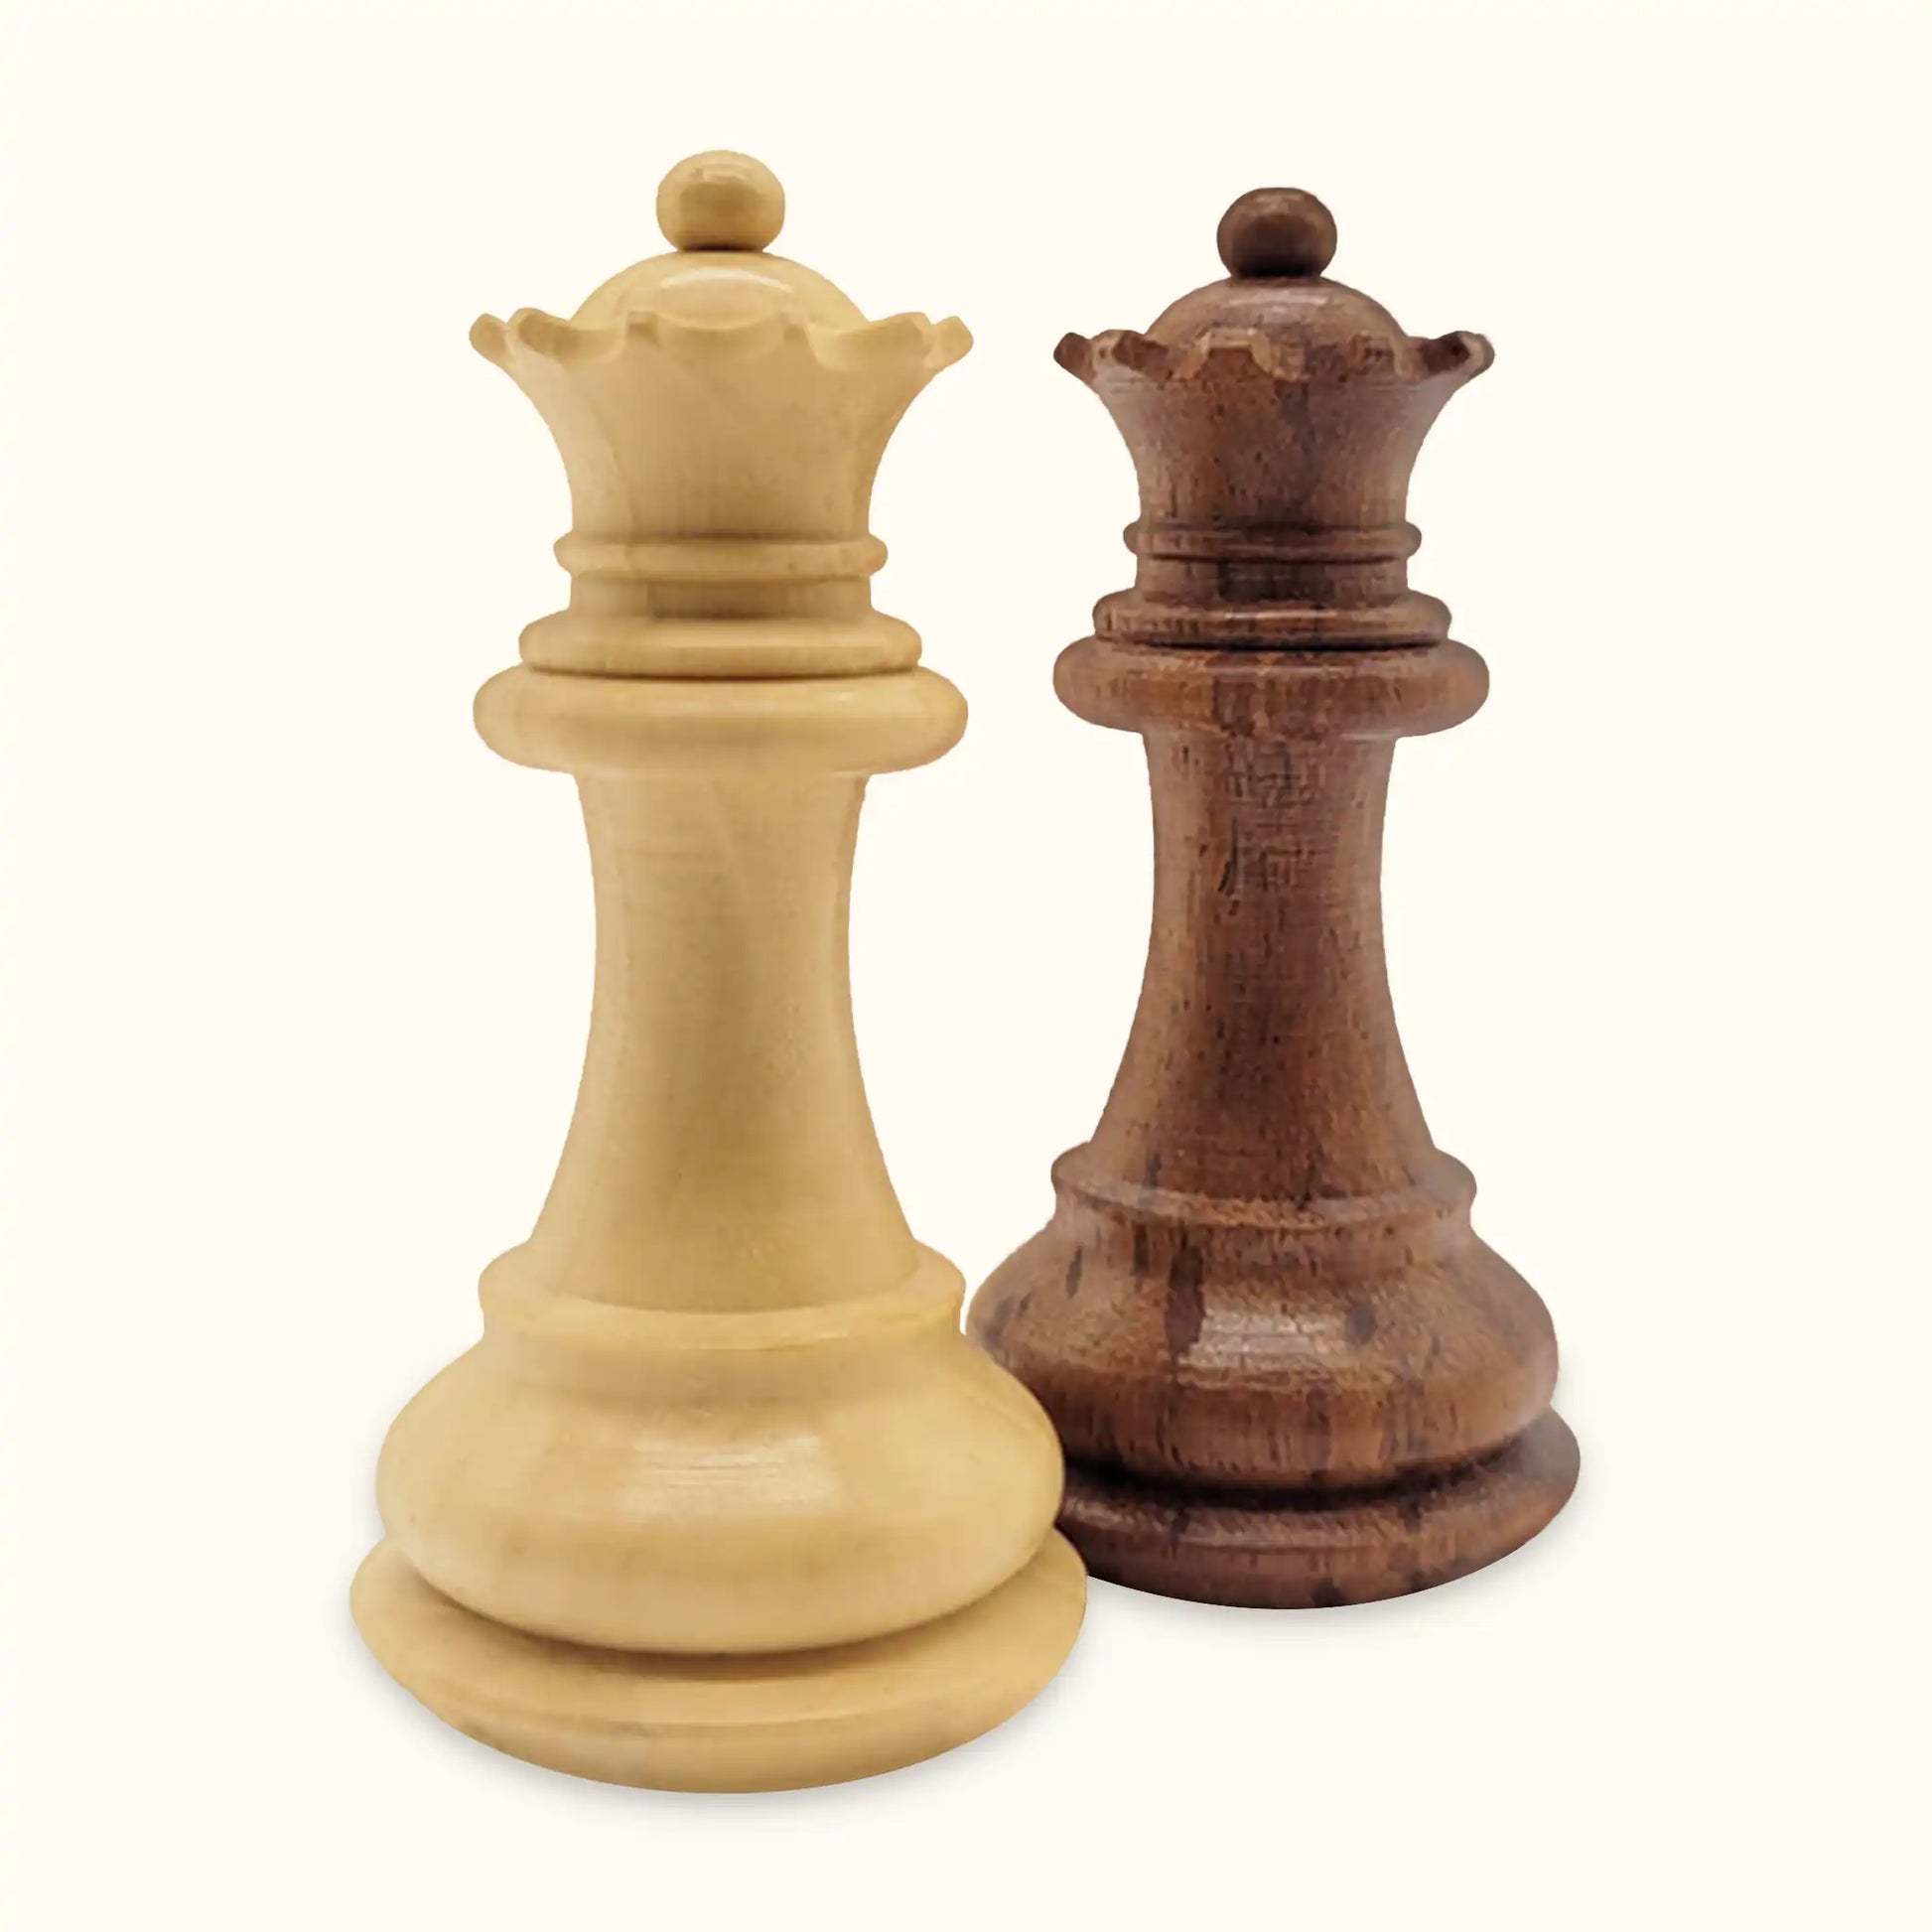 Chess pieces grace acacia queen